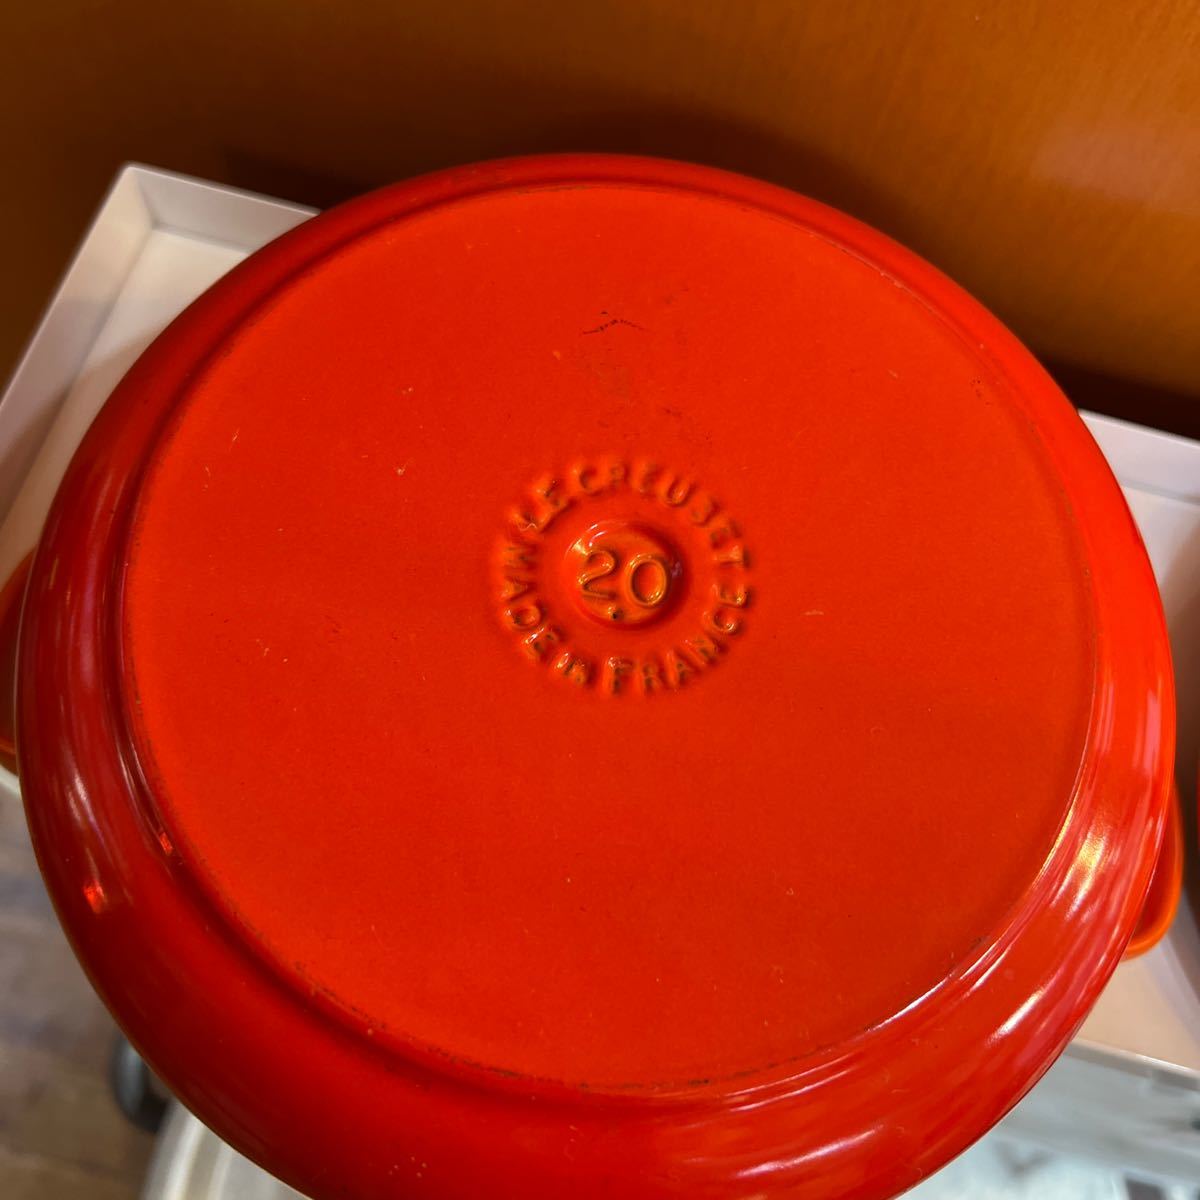 80 ル・クルーゼ　LE CREUSET ルクルーゼ 調理器具 オレンジ ココットロンド　20cm　 ホーロー鍋 両手鍋 手渡し可能_画像7